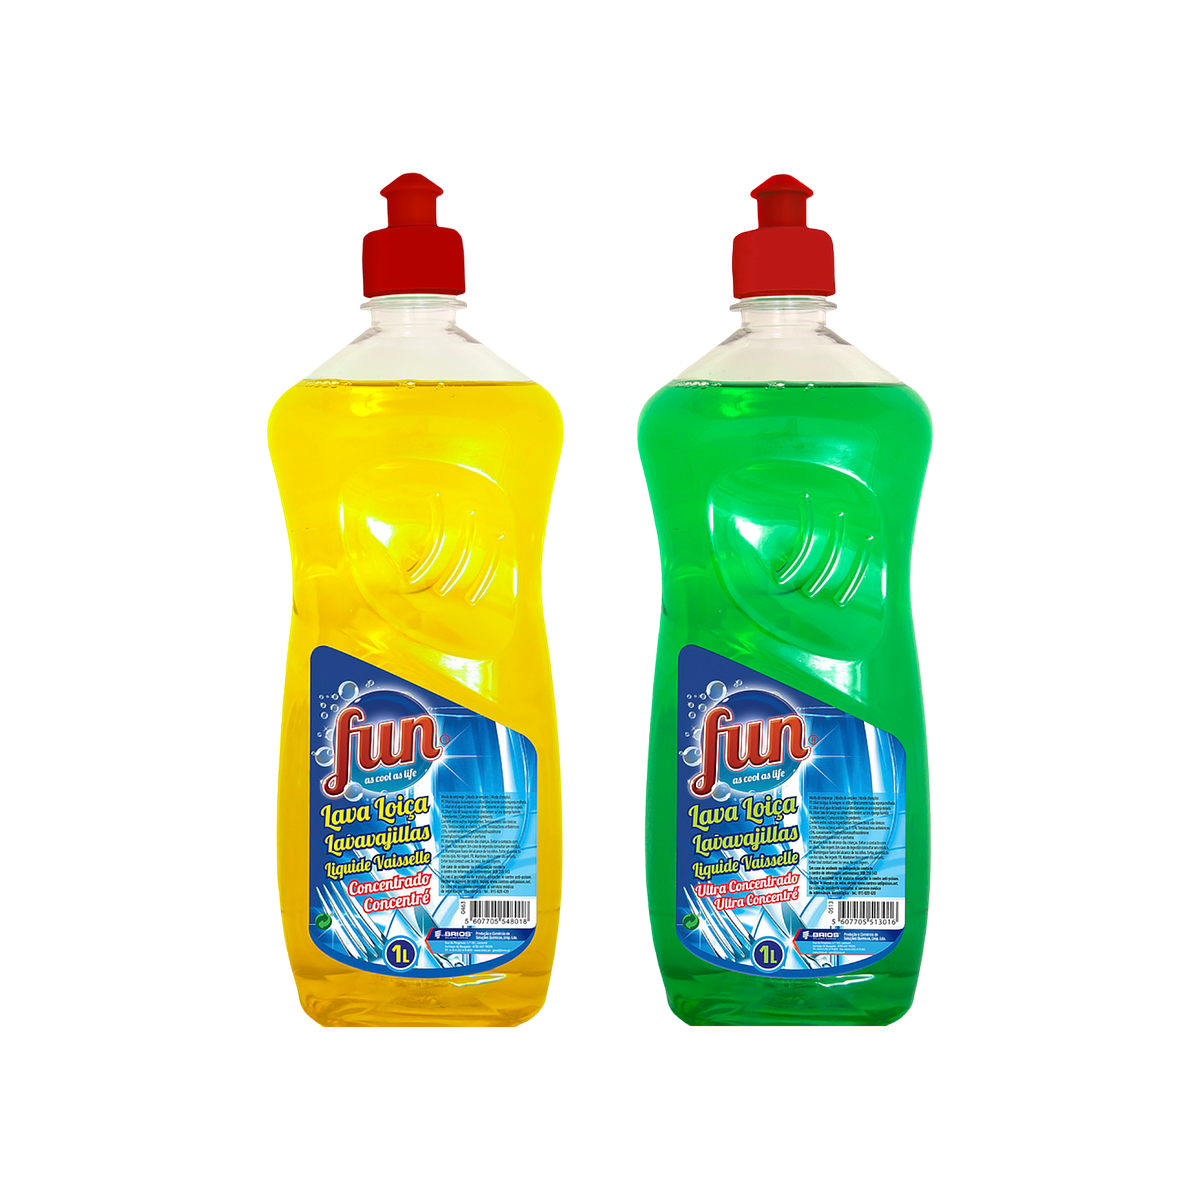 Liquide vaisselle main Fairy Ultra Original 480 ml